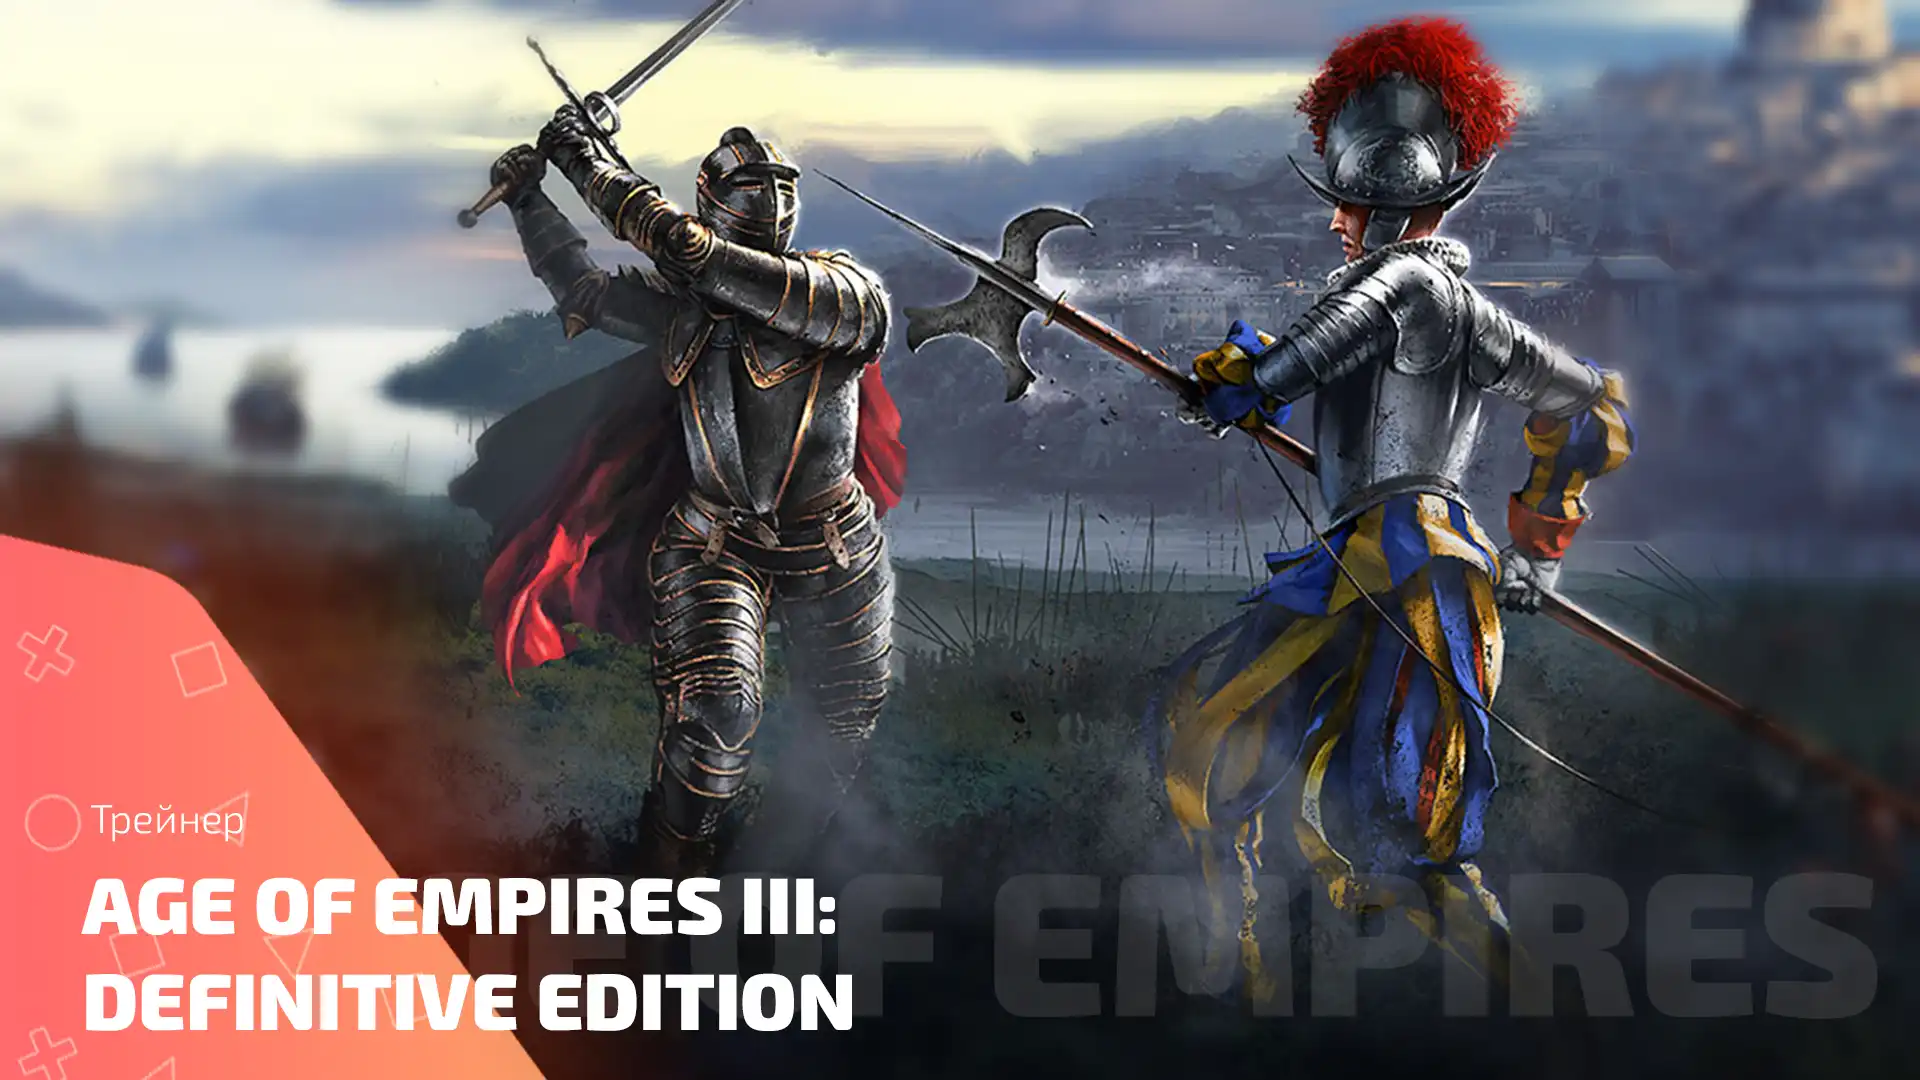 Рыцари времени: Age of Empires III в новом измерении